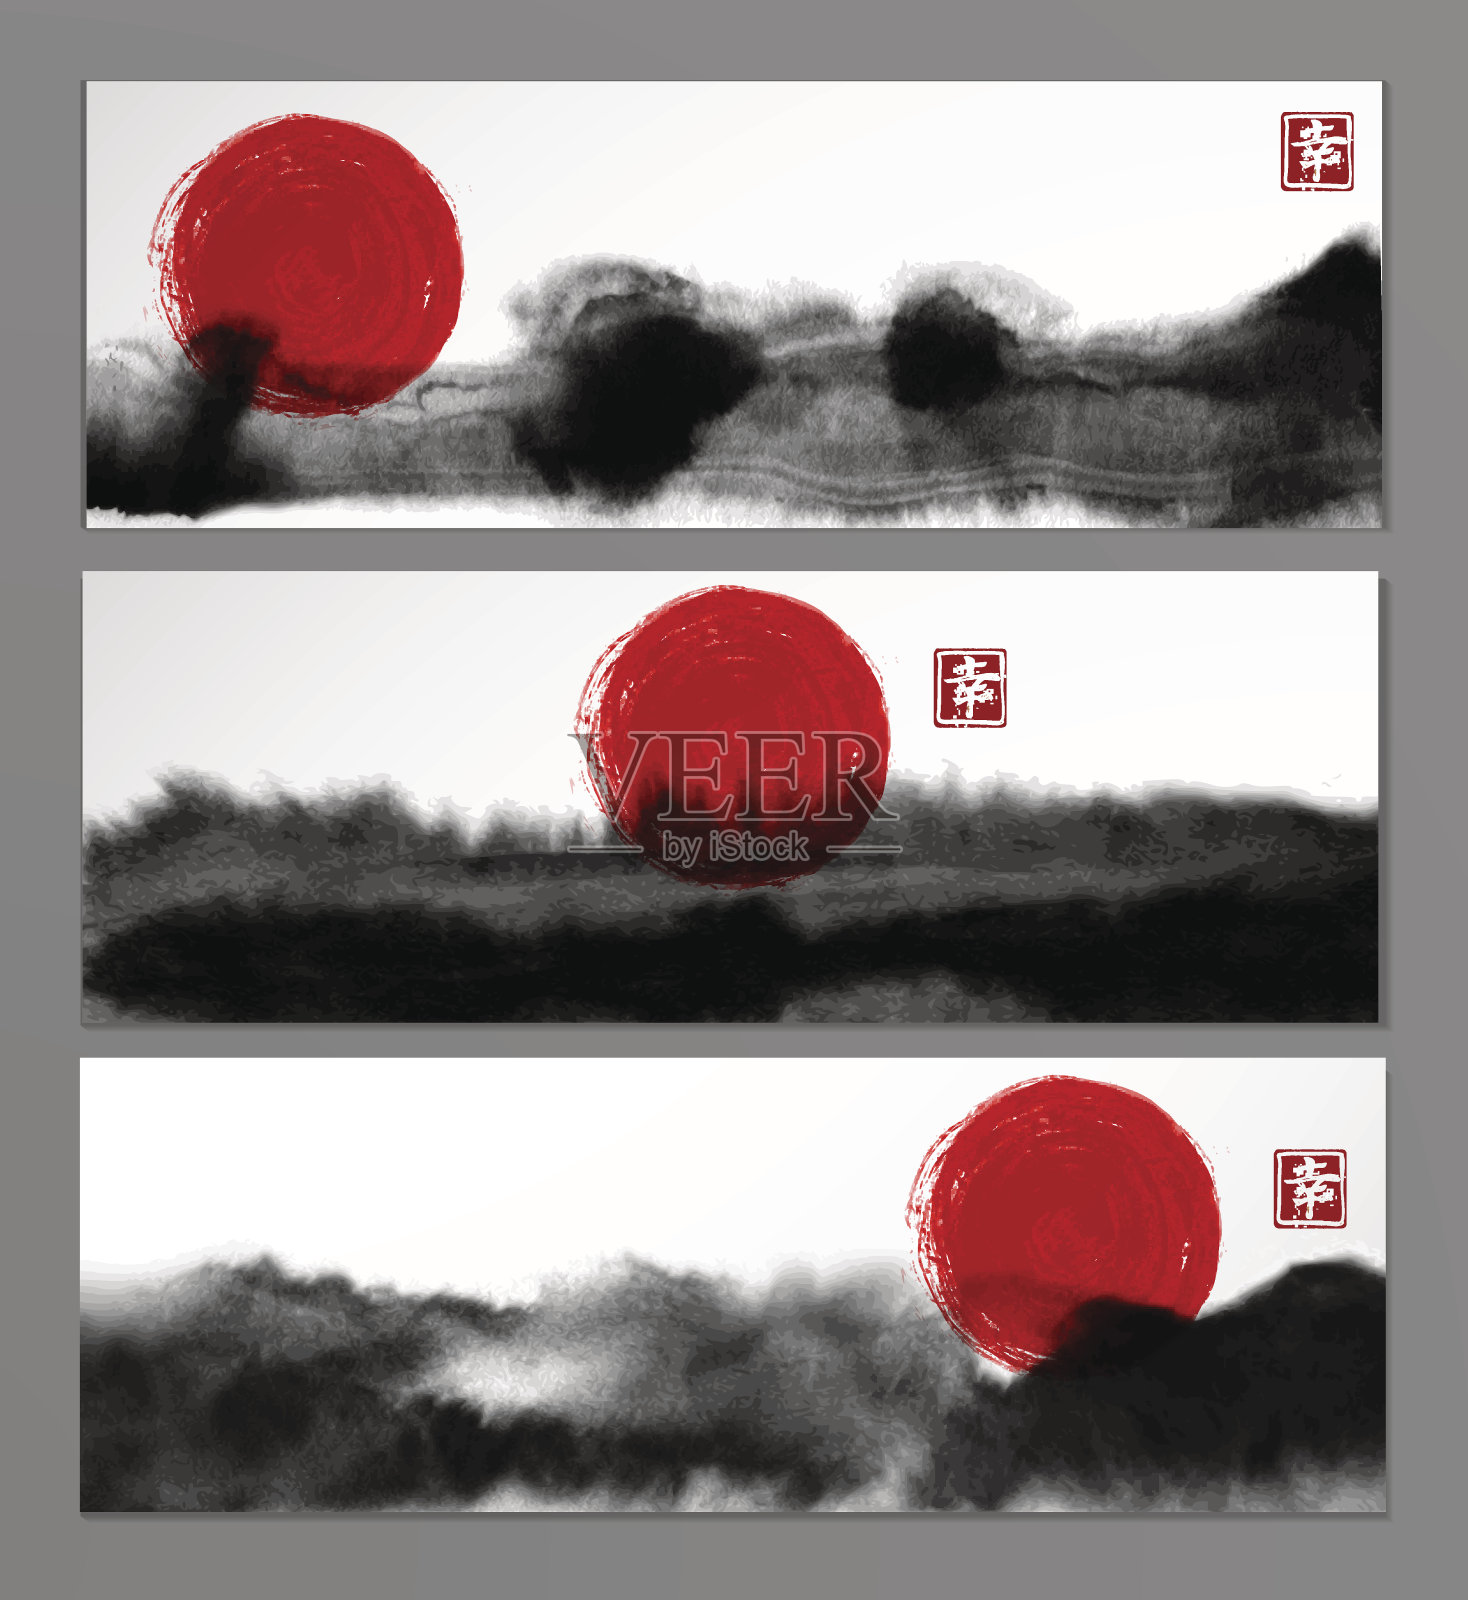 东亚风格的抽象黑色水墨画和红日条幅。传统的日本水墨画。包含象形文字-幸福。设计模板素材